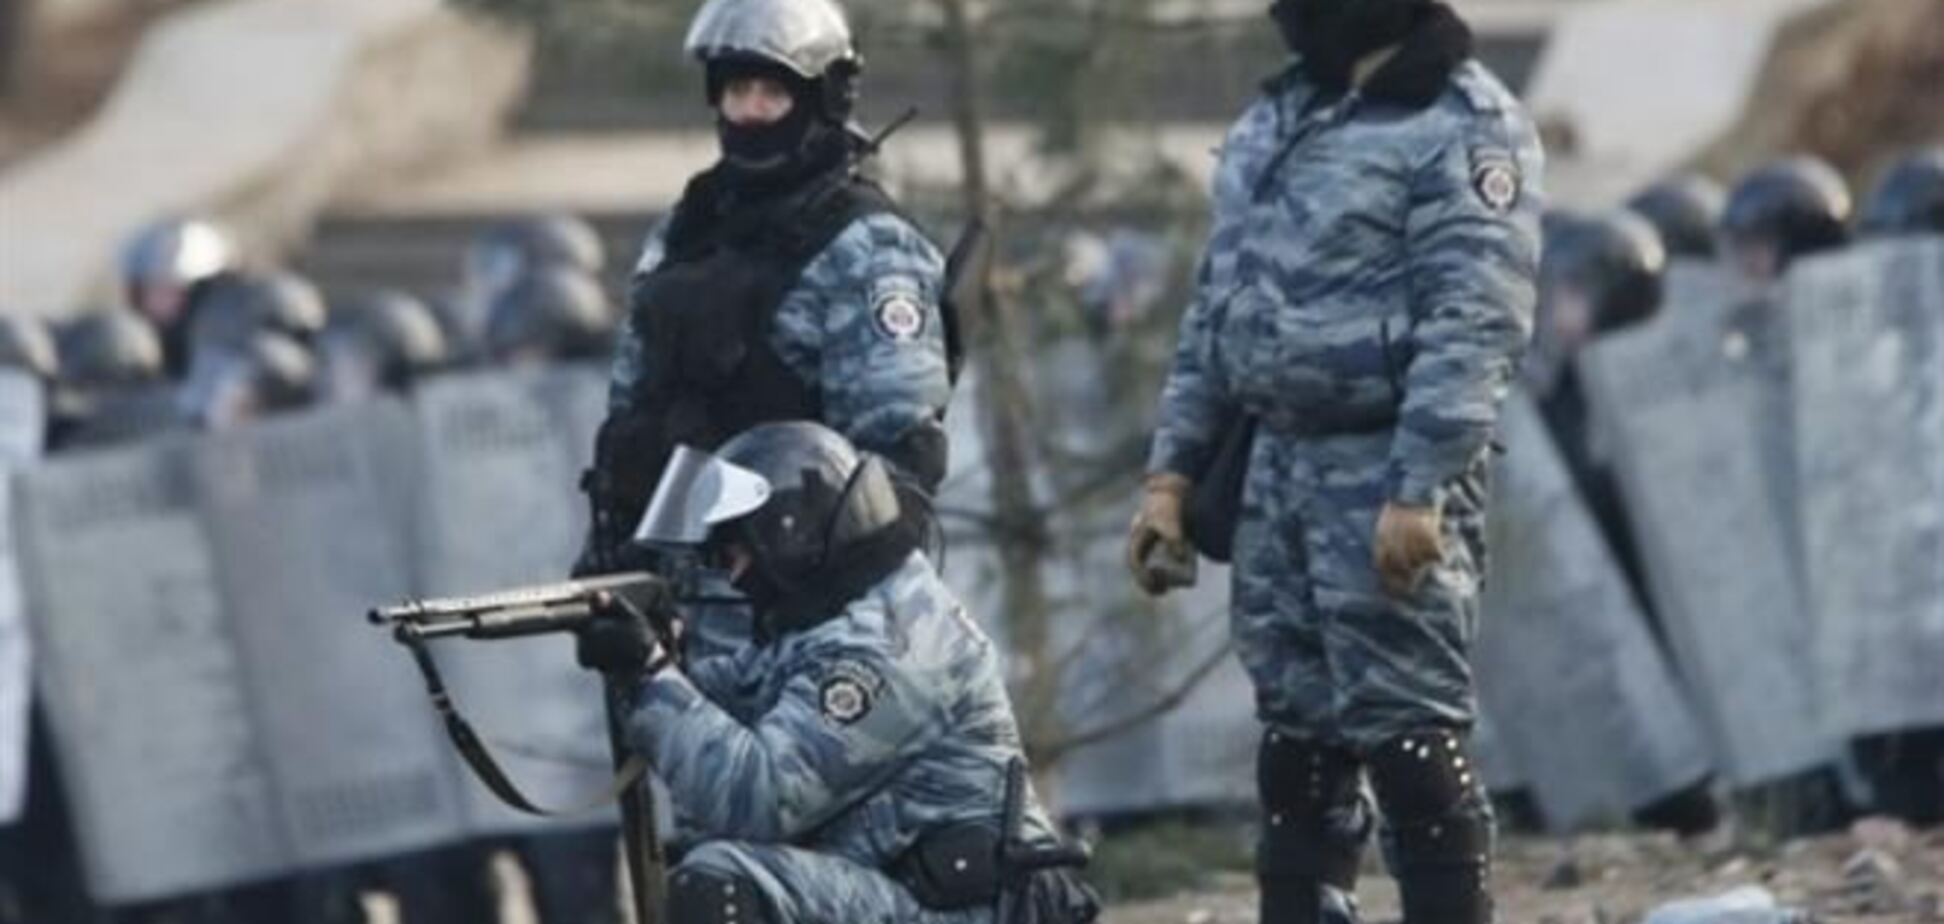 Прокуратура: активистов убили не из оружия силовиков